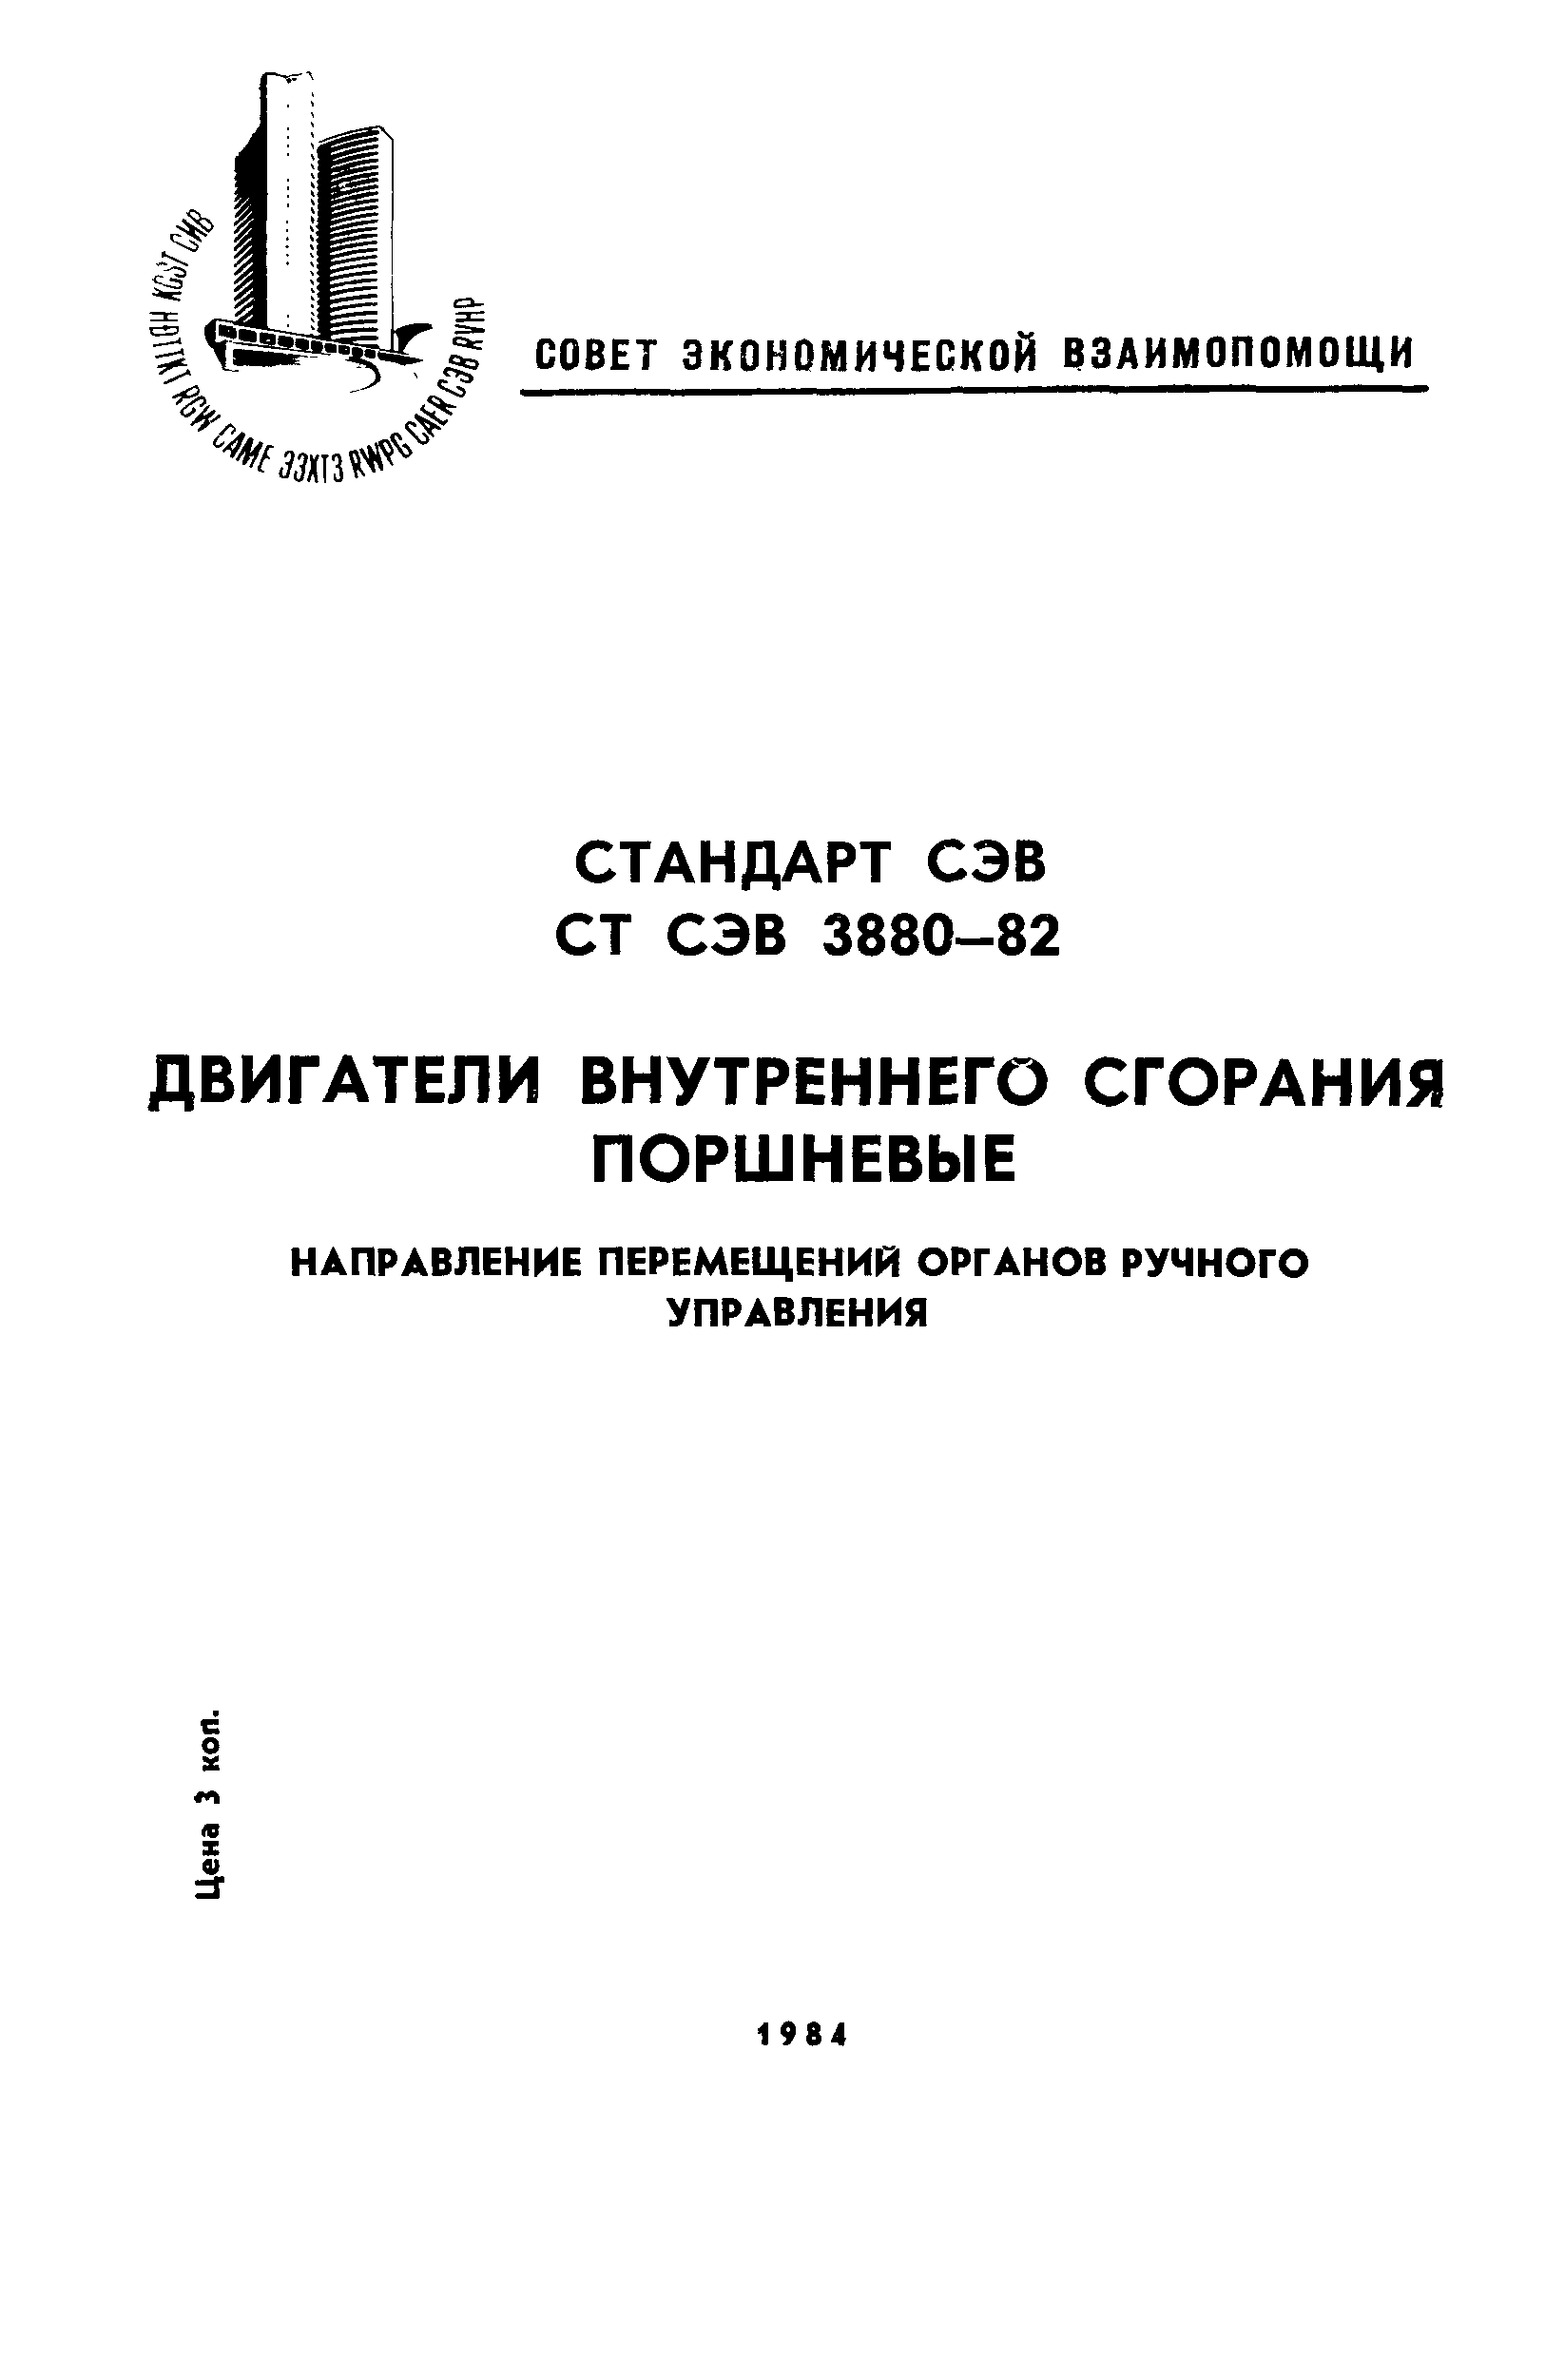 СТ СЭВ 3880-82